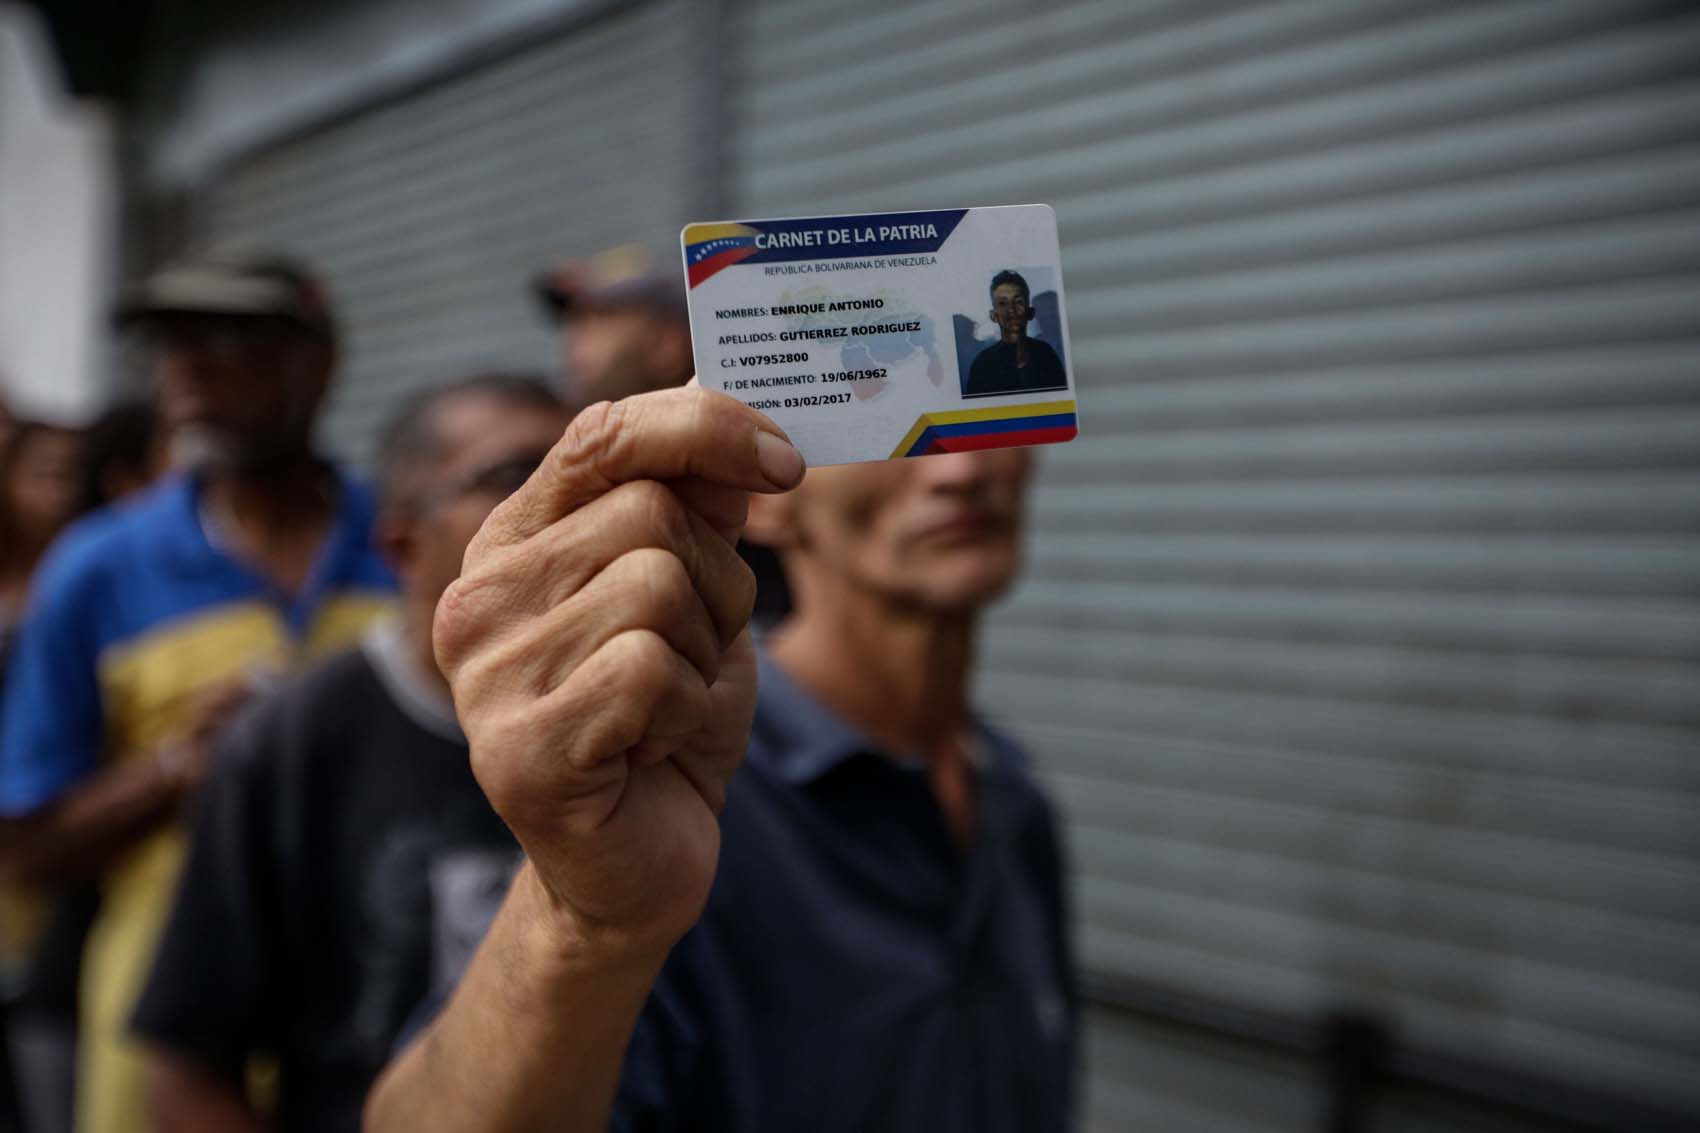 El carnet de la patria consolida el anhelo de control del chavismo